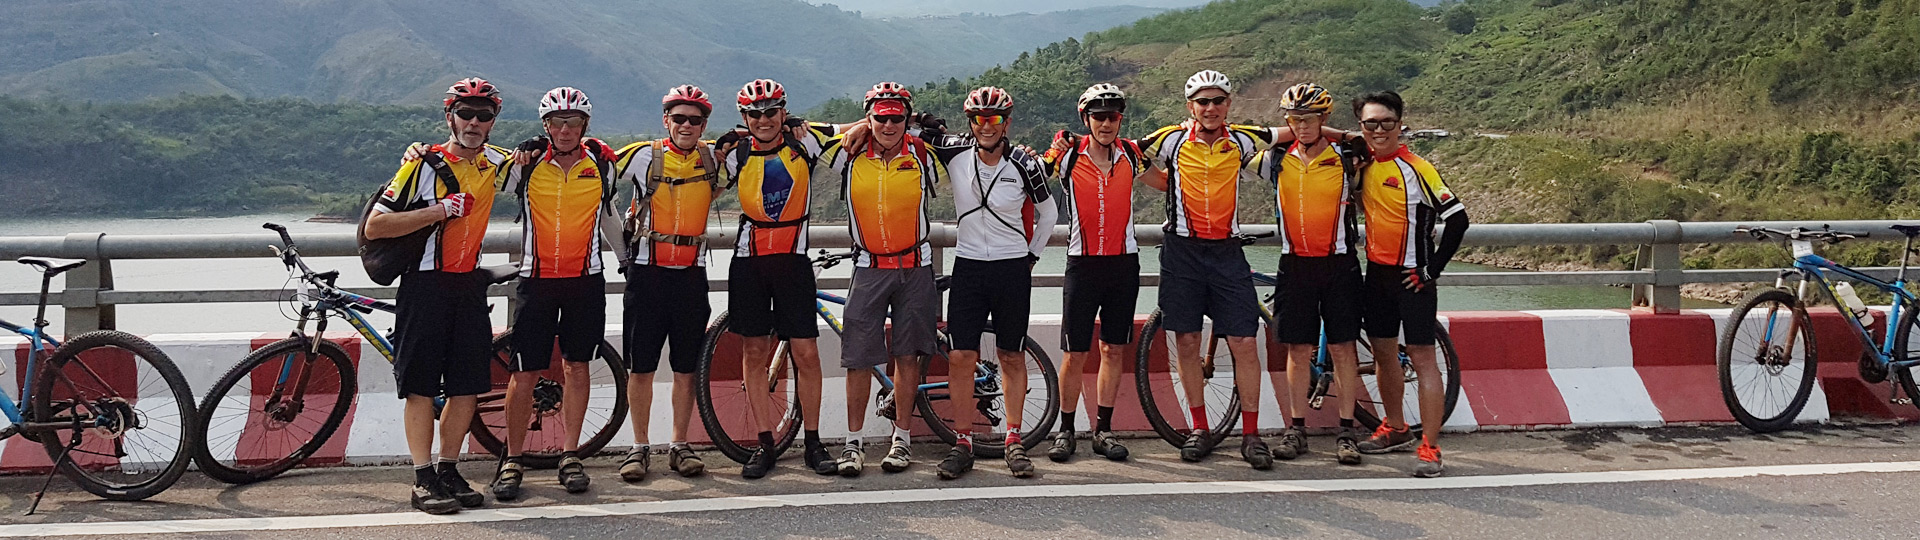 Laos Biking Explore Tours - 15 Days